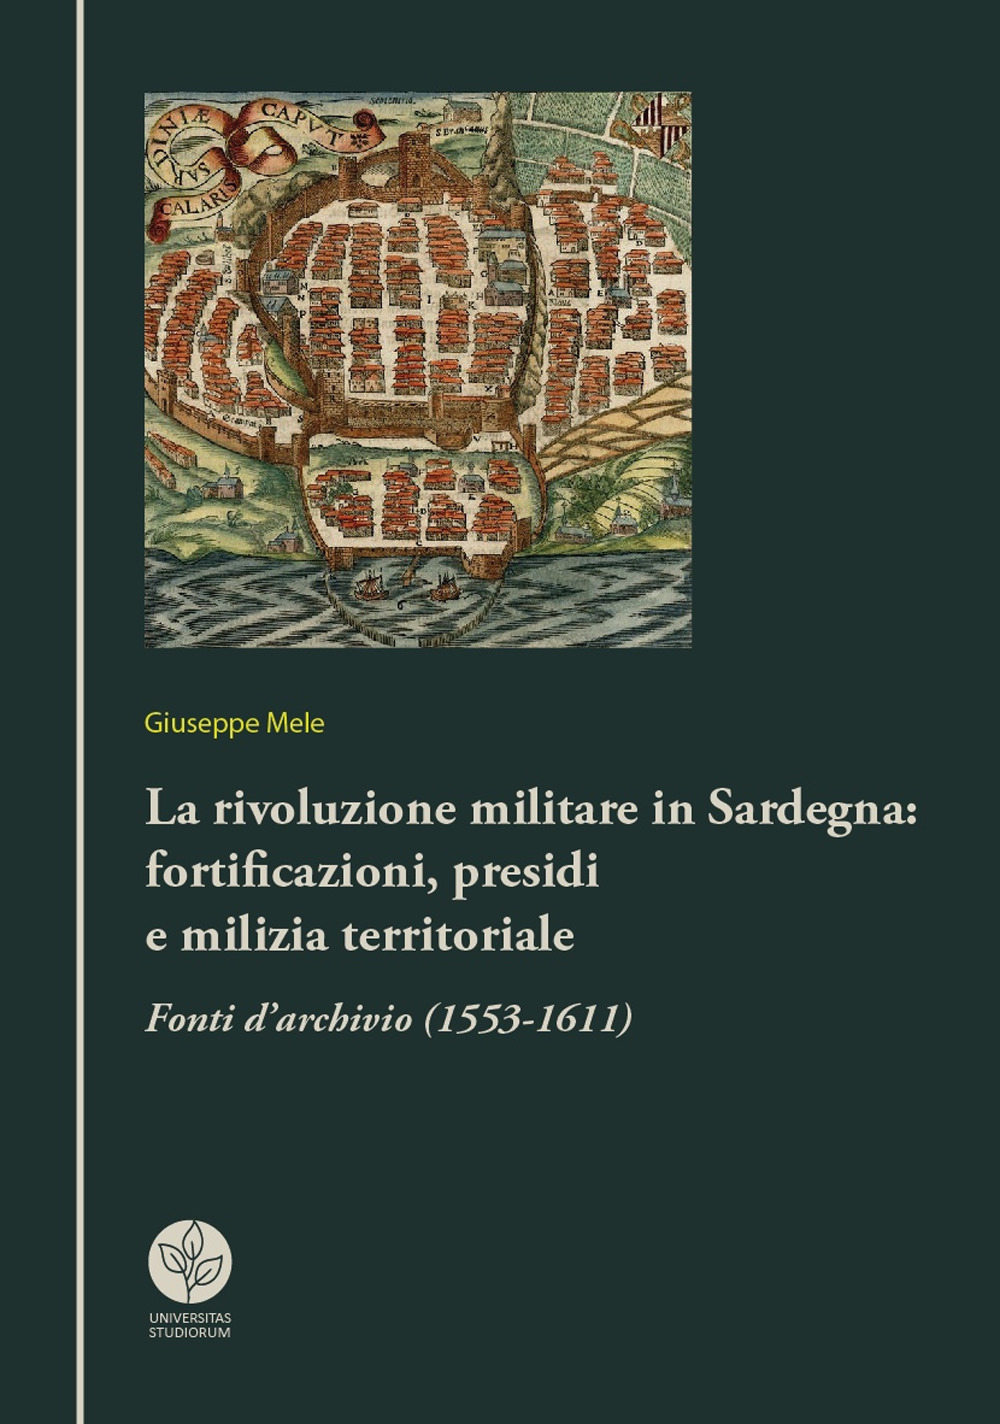 La rivoluzione militare in Sardegna: fortificazioni, presidi e milizia territoriale. Fonti d'archivio (1553-1611)